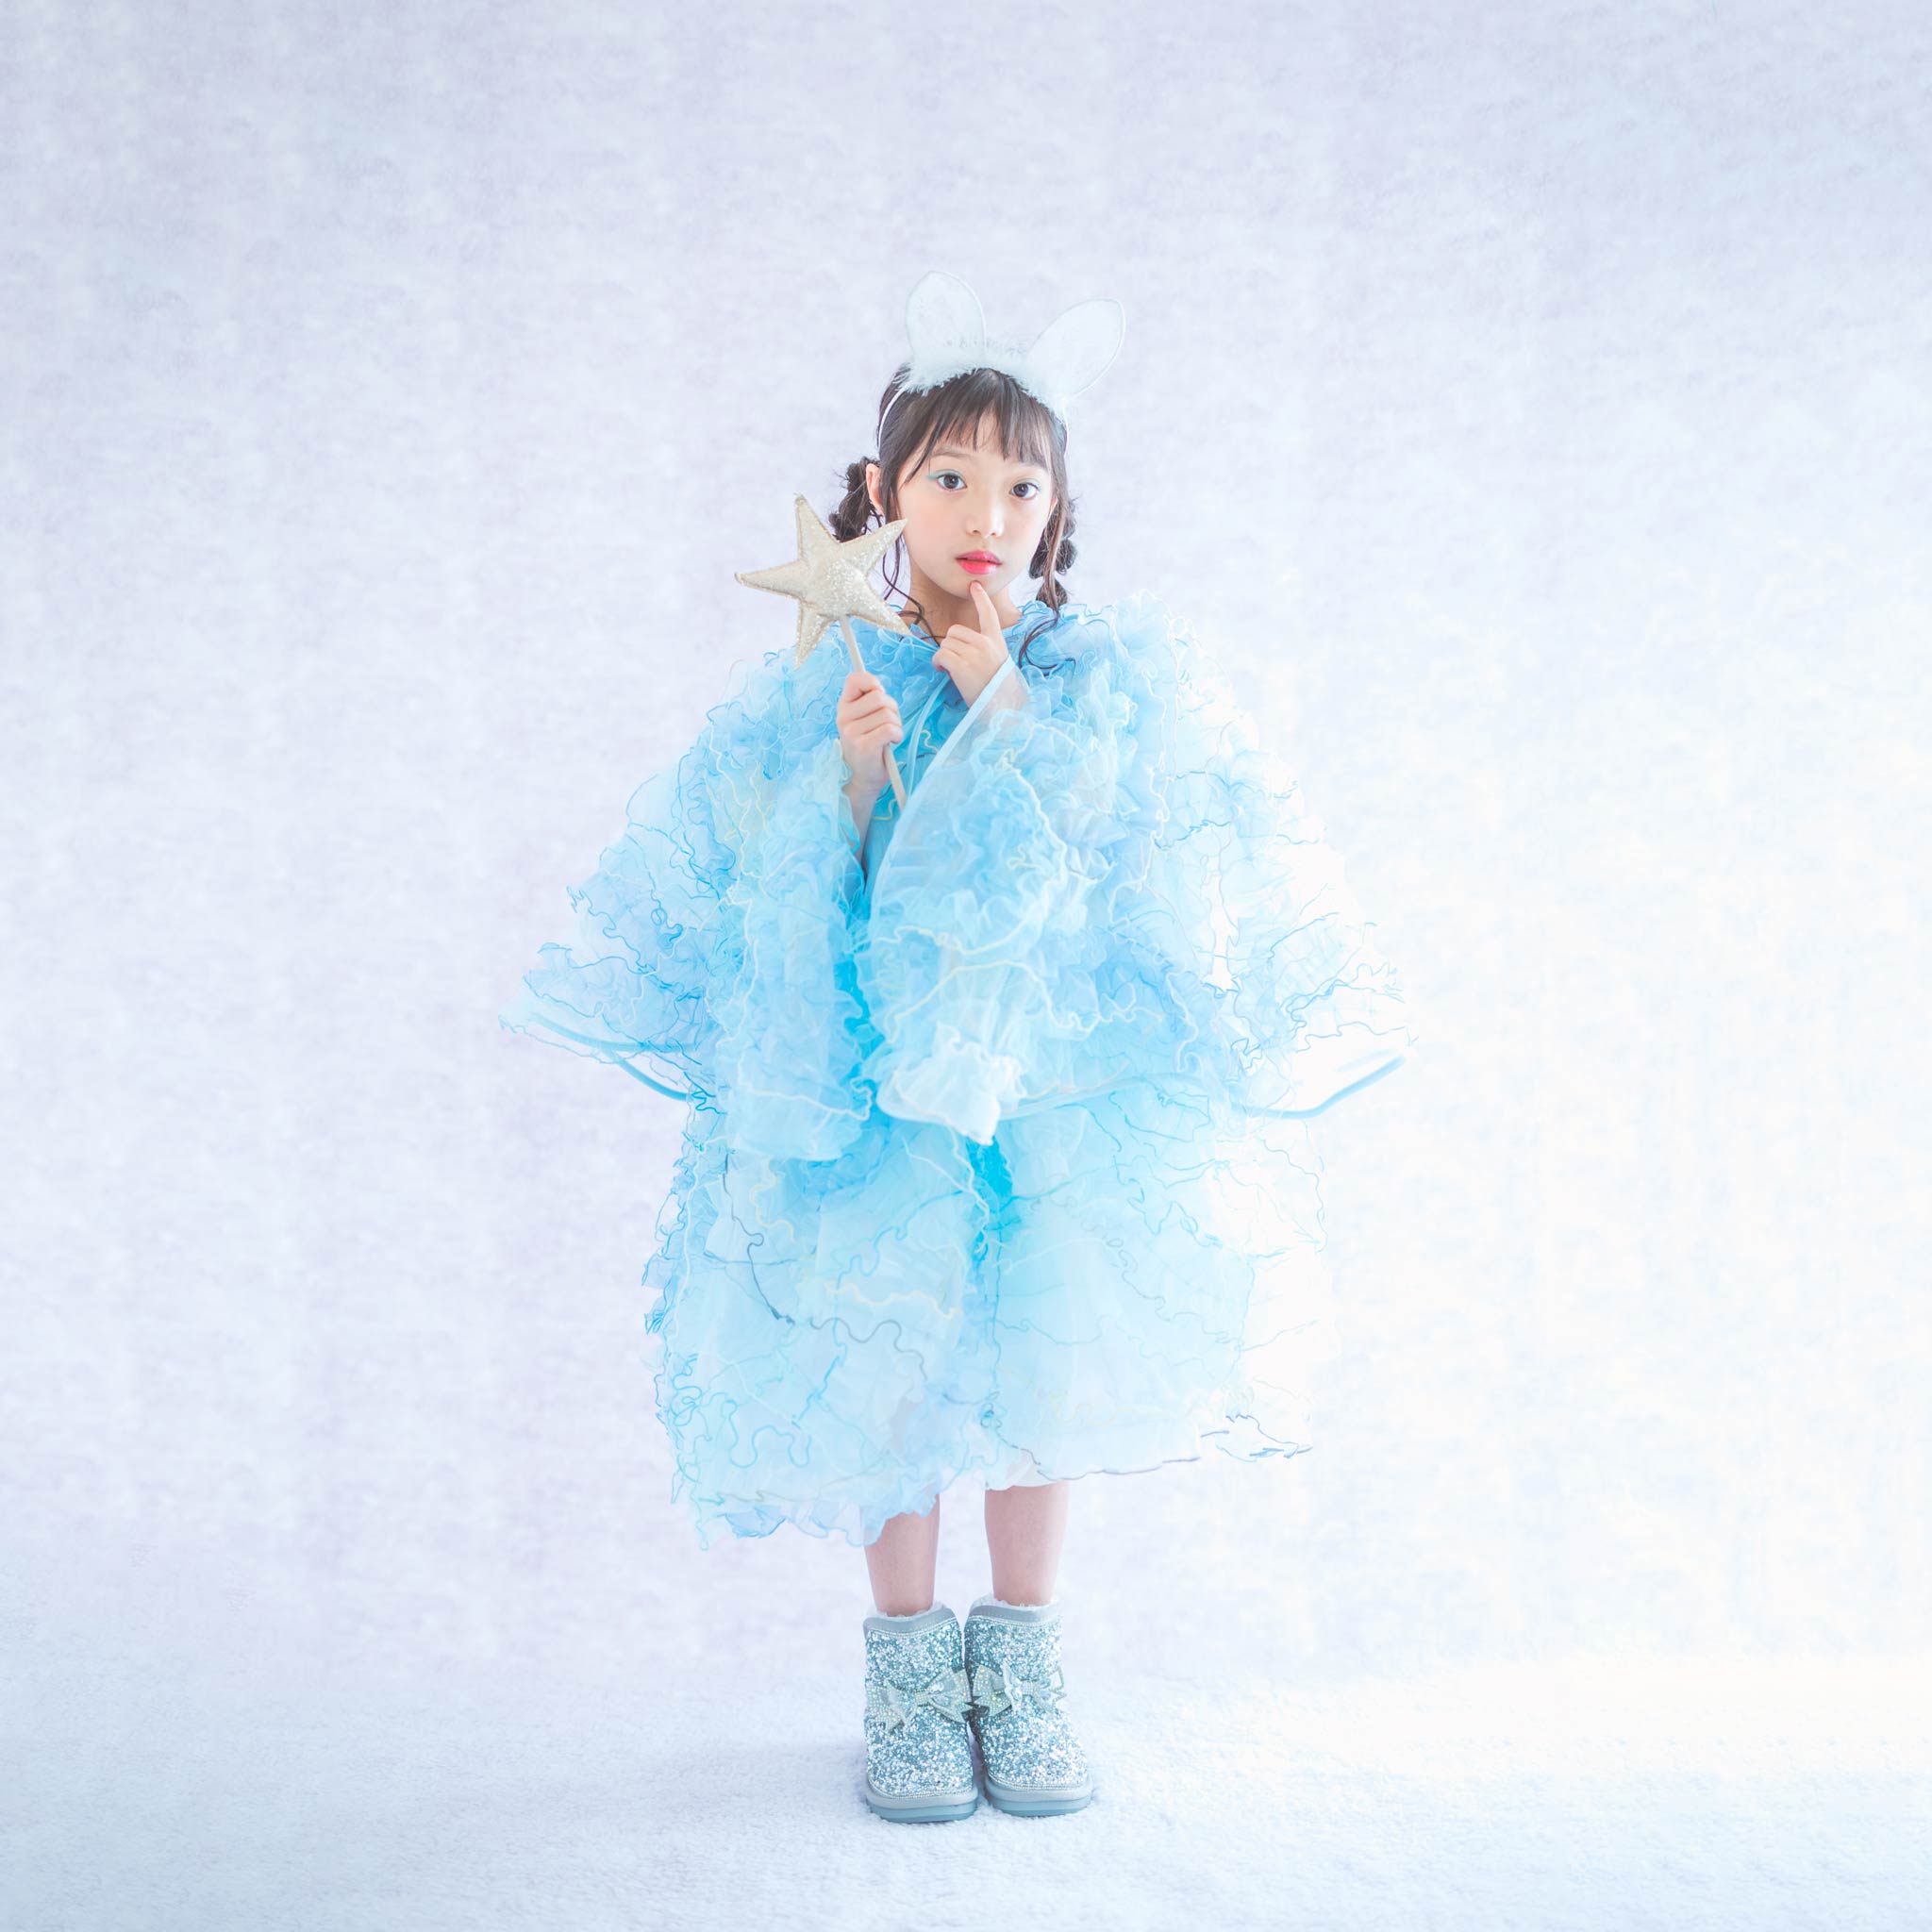 「Ivy Kids Collection」衣装ラインナップ発表♡ | 子供のおしゃれなレンタル衣装 - heartmelt